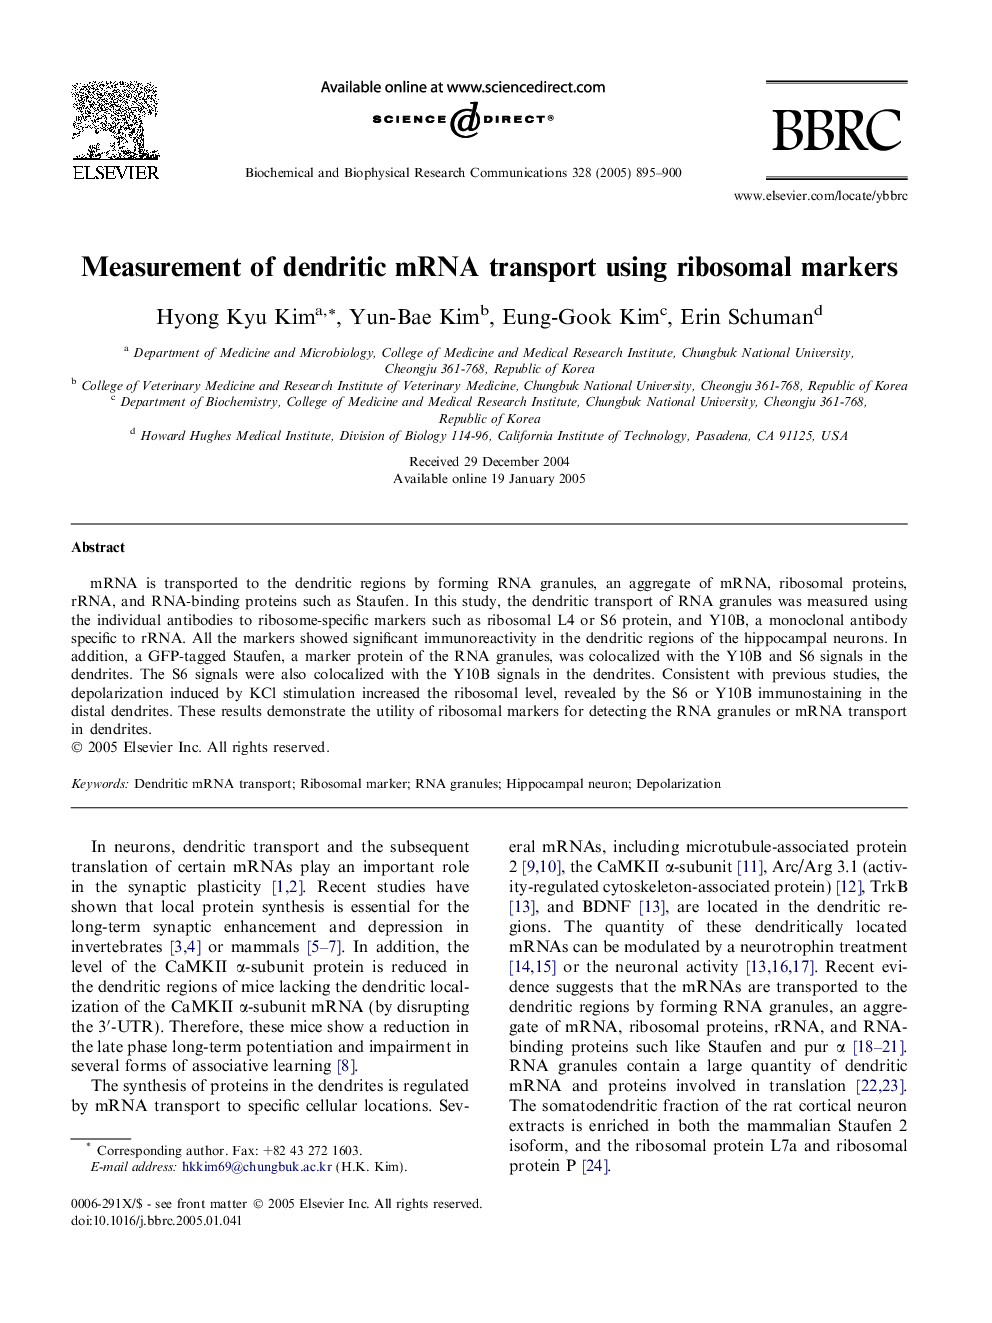 Measurement of dendritic mRNA transport using ribosomal markers